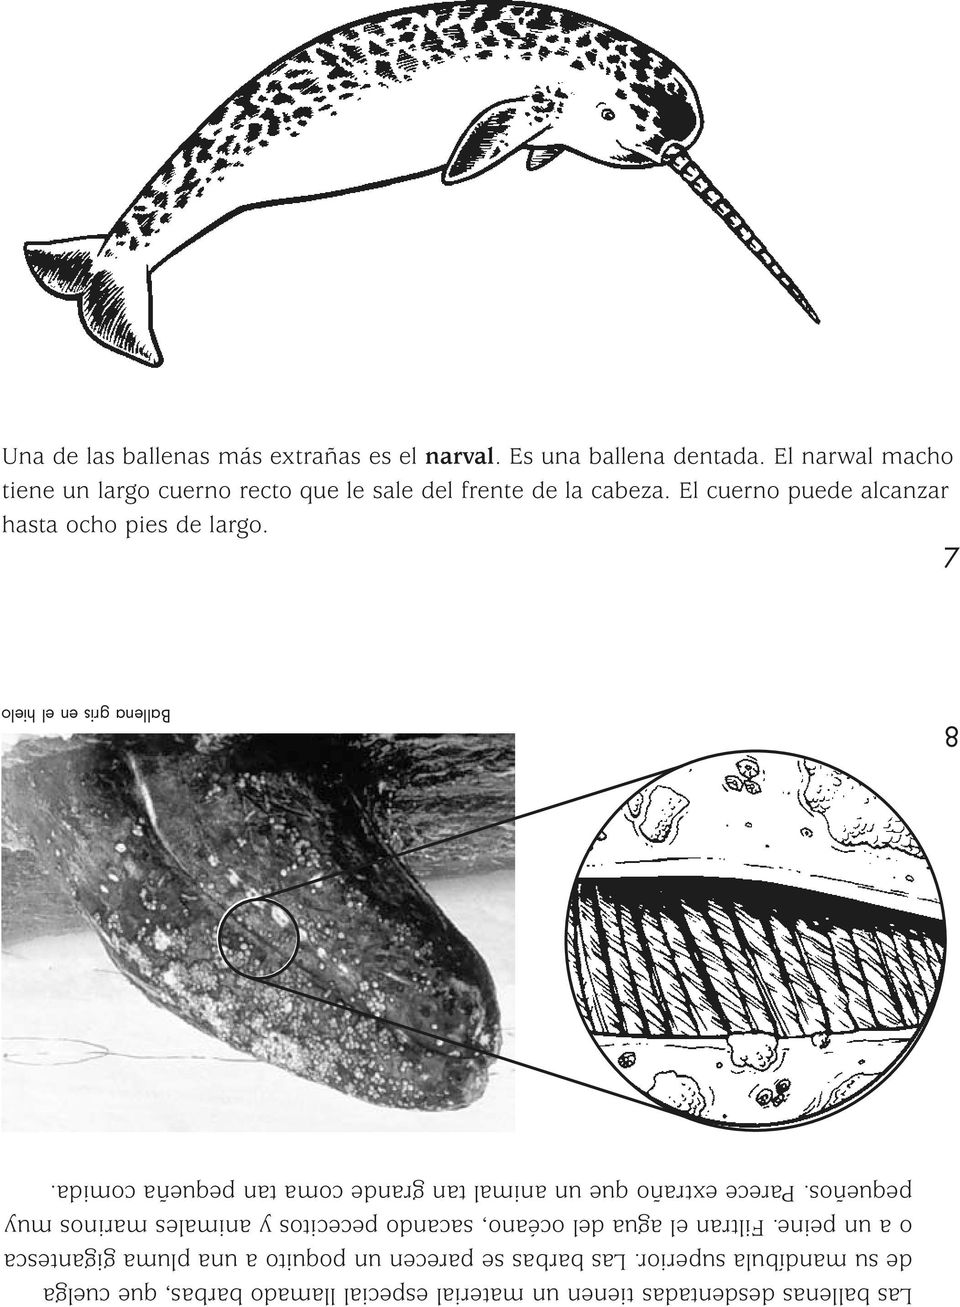 7 Las ballenas desdentadas tienen un material especial llamado barbas, que cuelga de su mandíbula superior.